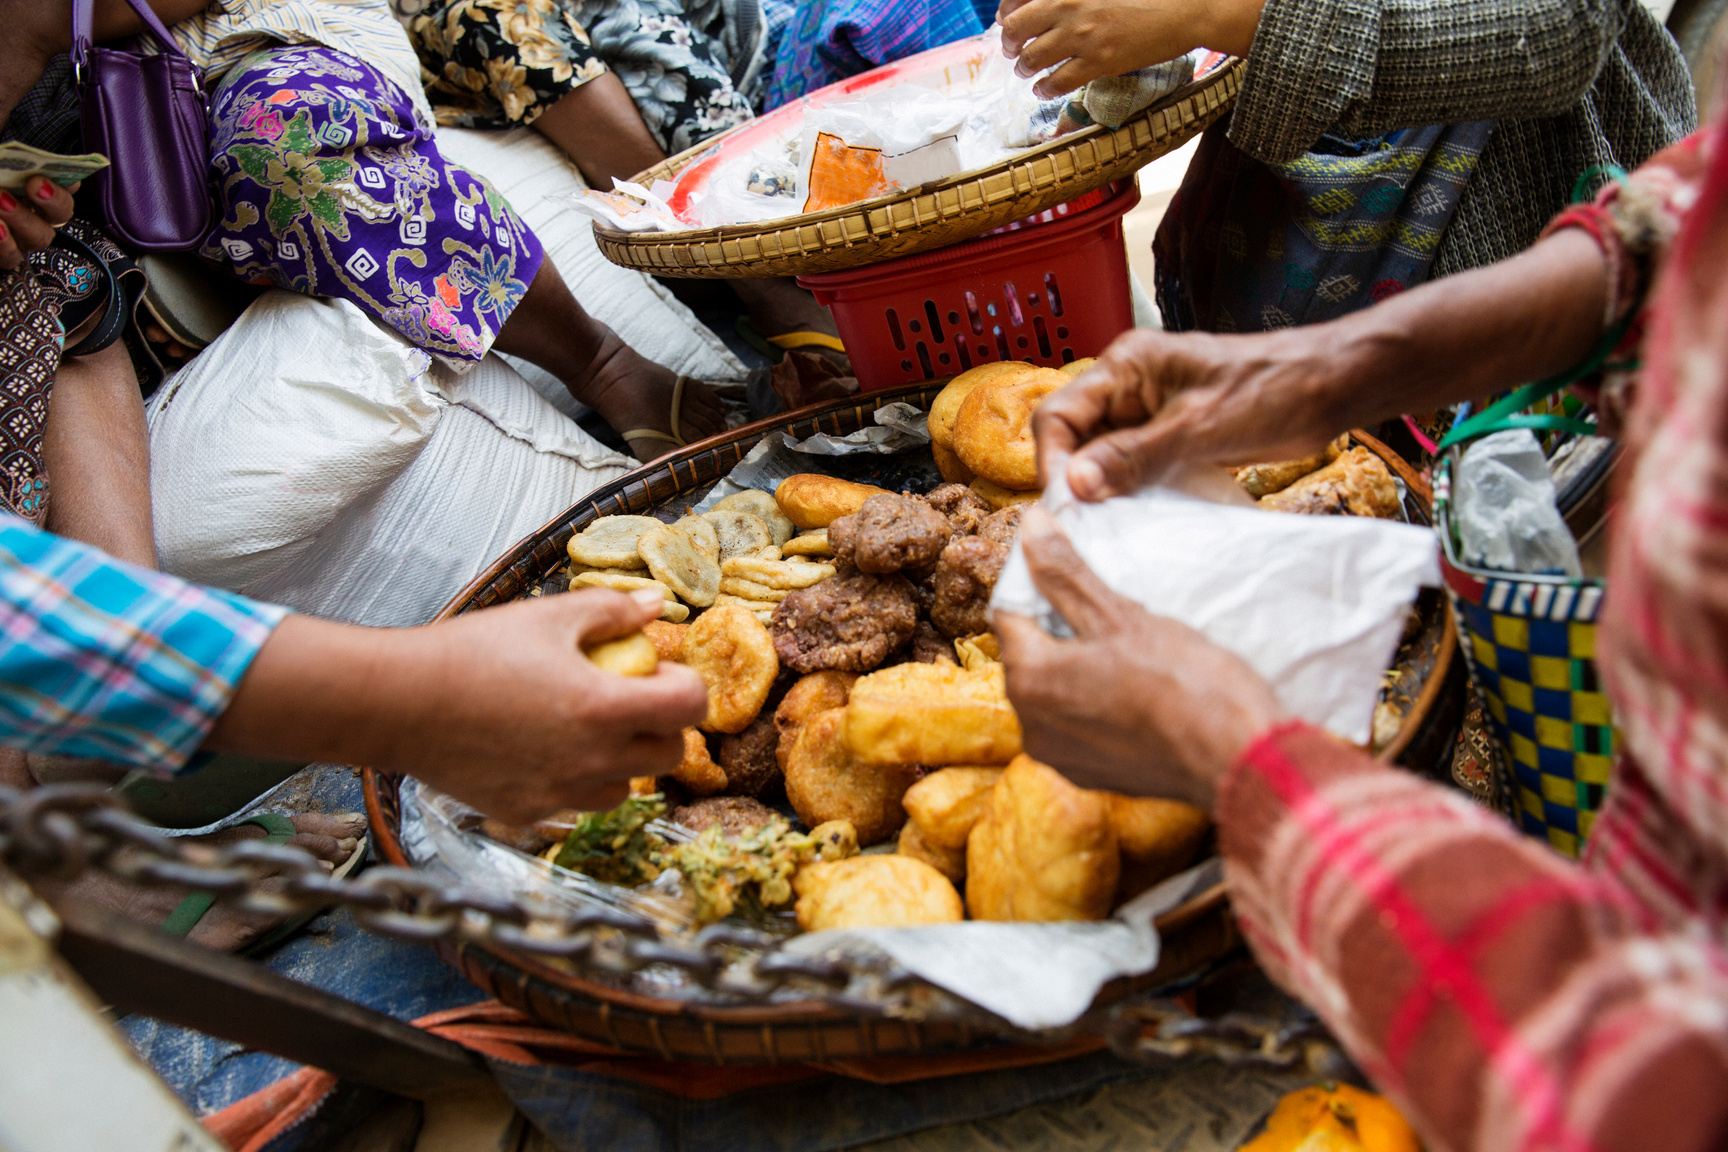 Myanmarian women eating